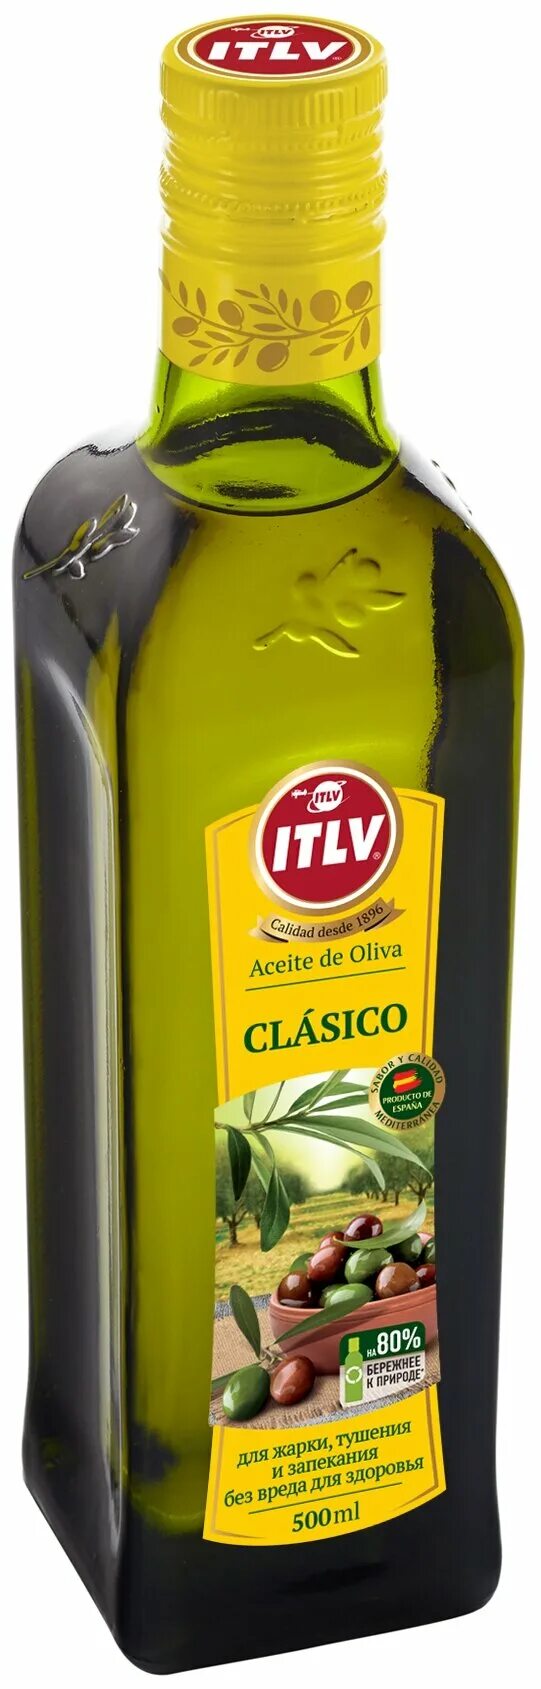 Оливковое масло ITLV Extra Virgen 500мл. Масло оливковое 100% ITLV 500мл.. Оливковое масло ITLV clasico 500мл. Масло оливковое ITLV 100% clasico, 1,0 л. Беру оливковое масло